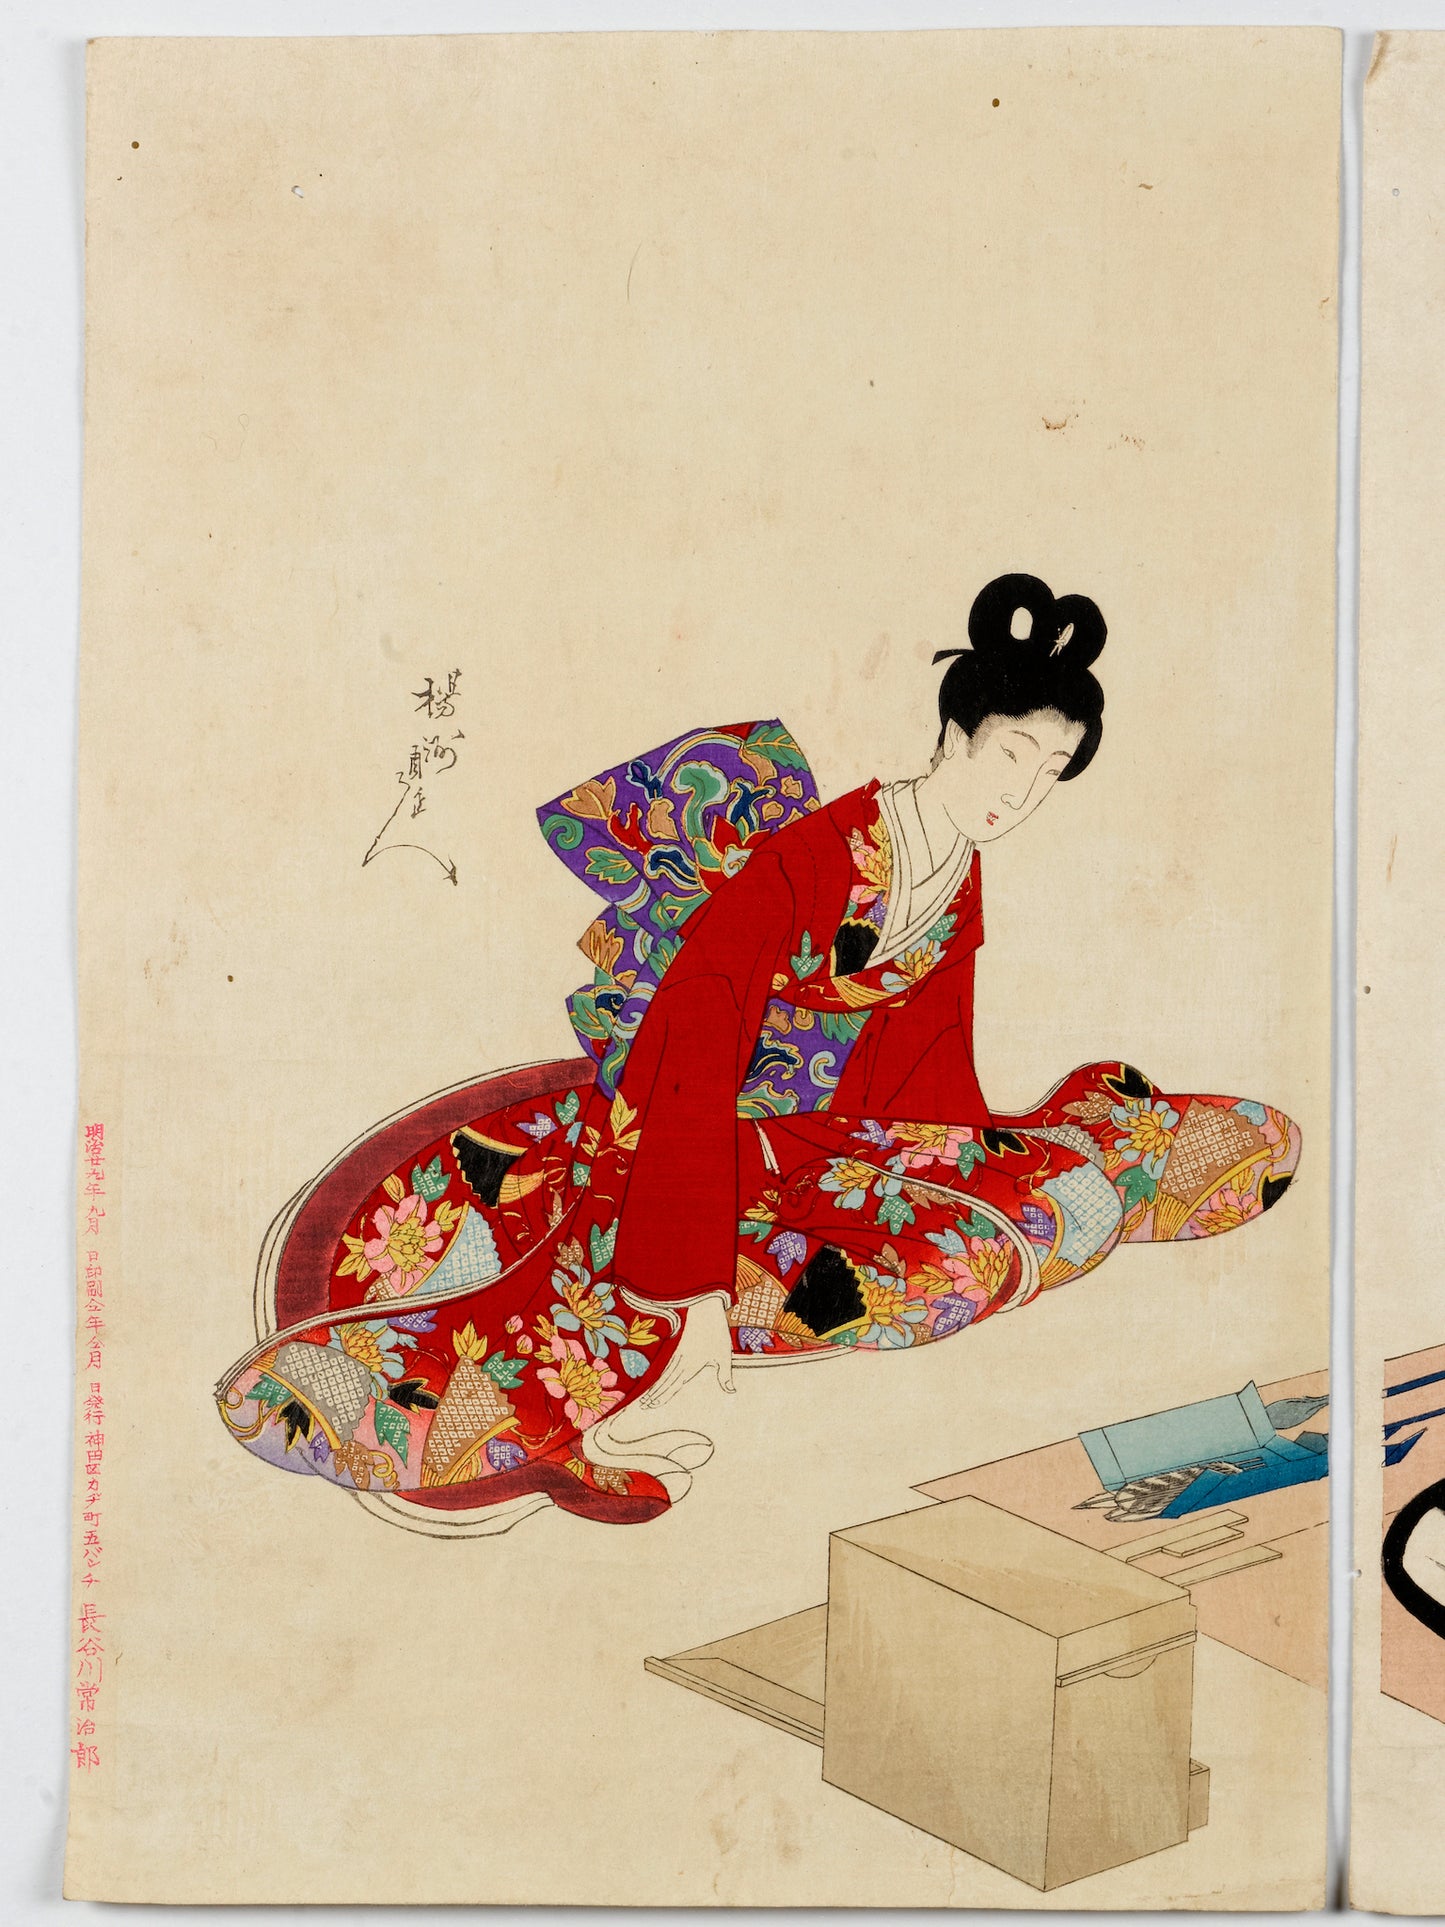 estampe japonaise de Chikanobu dames epoque tokugawa, création paysage bonkei, femme kimono rouge signature artiste et marque éditeur